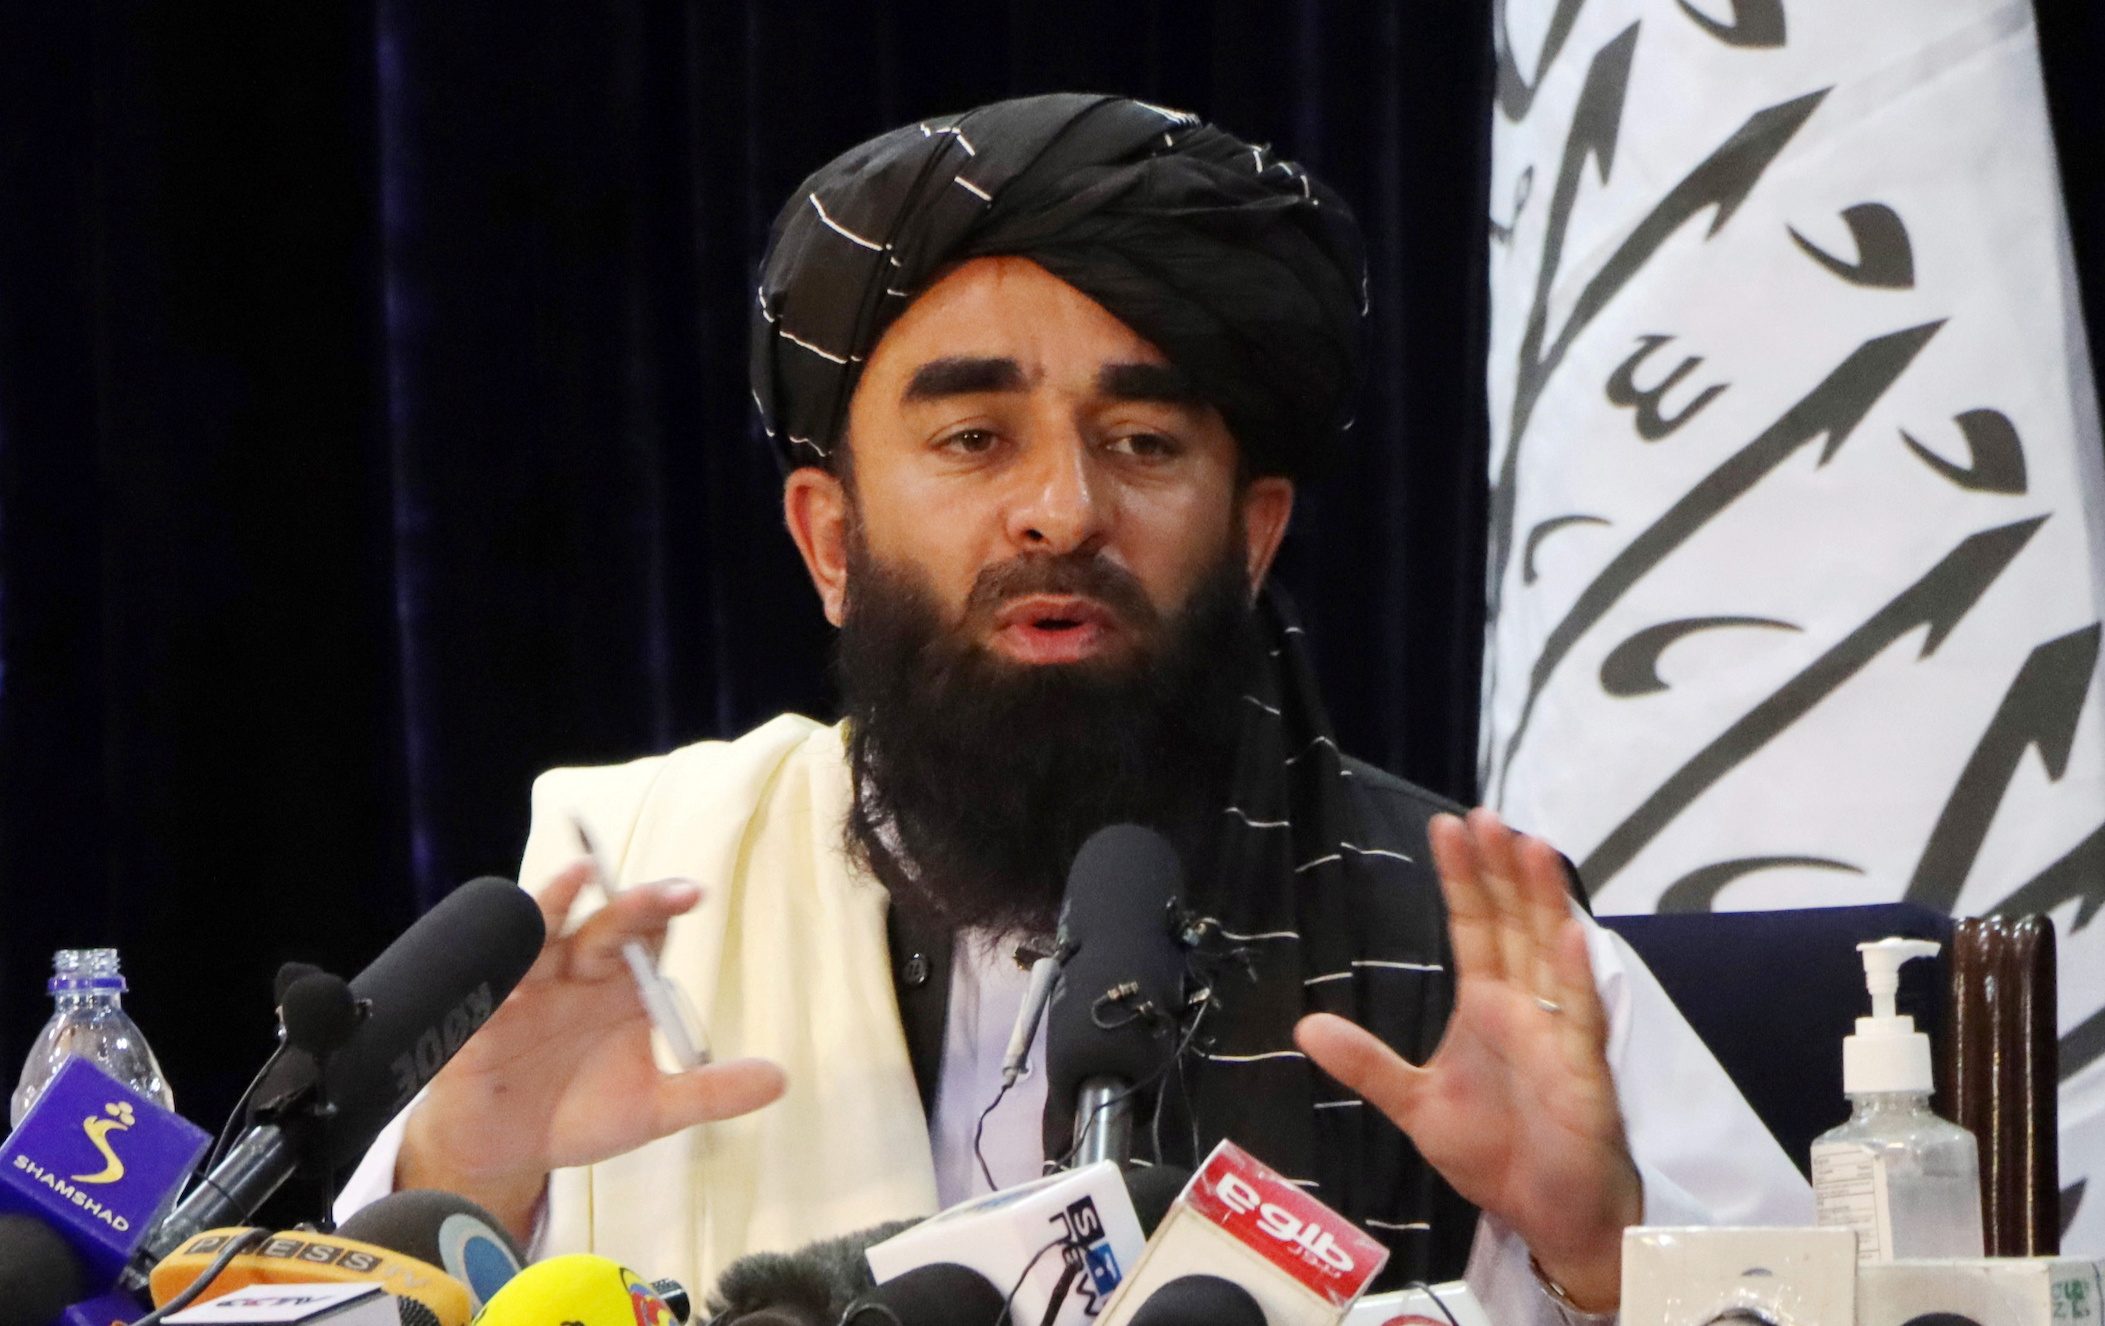 Taliban killed relative of Deutsche Welle reporter, German broadcaster says